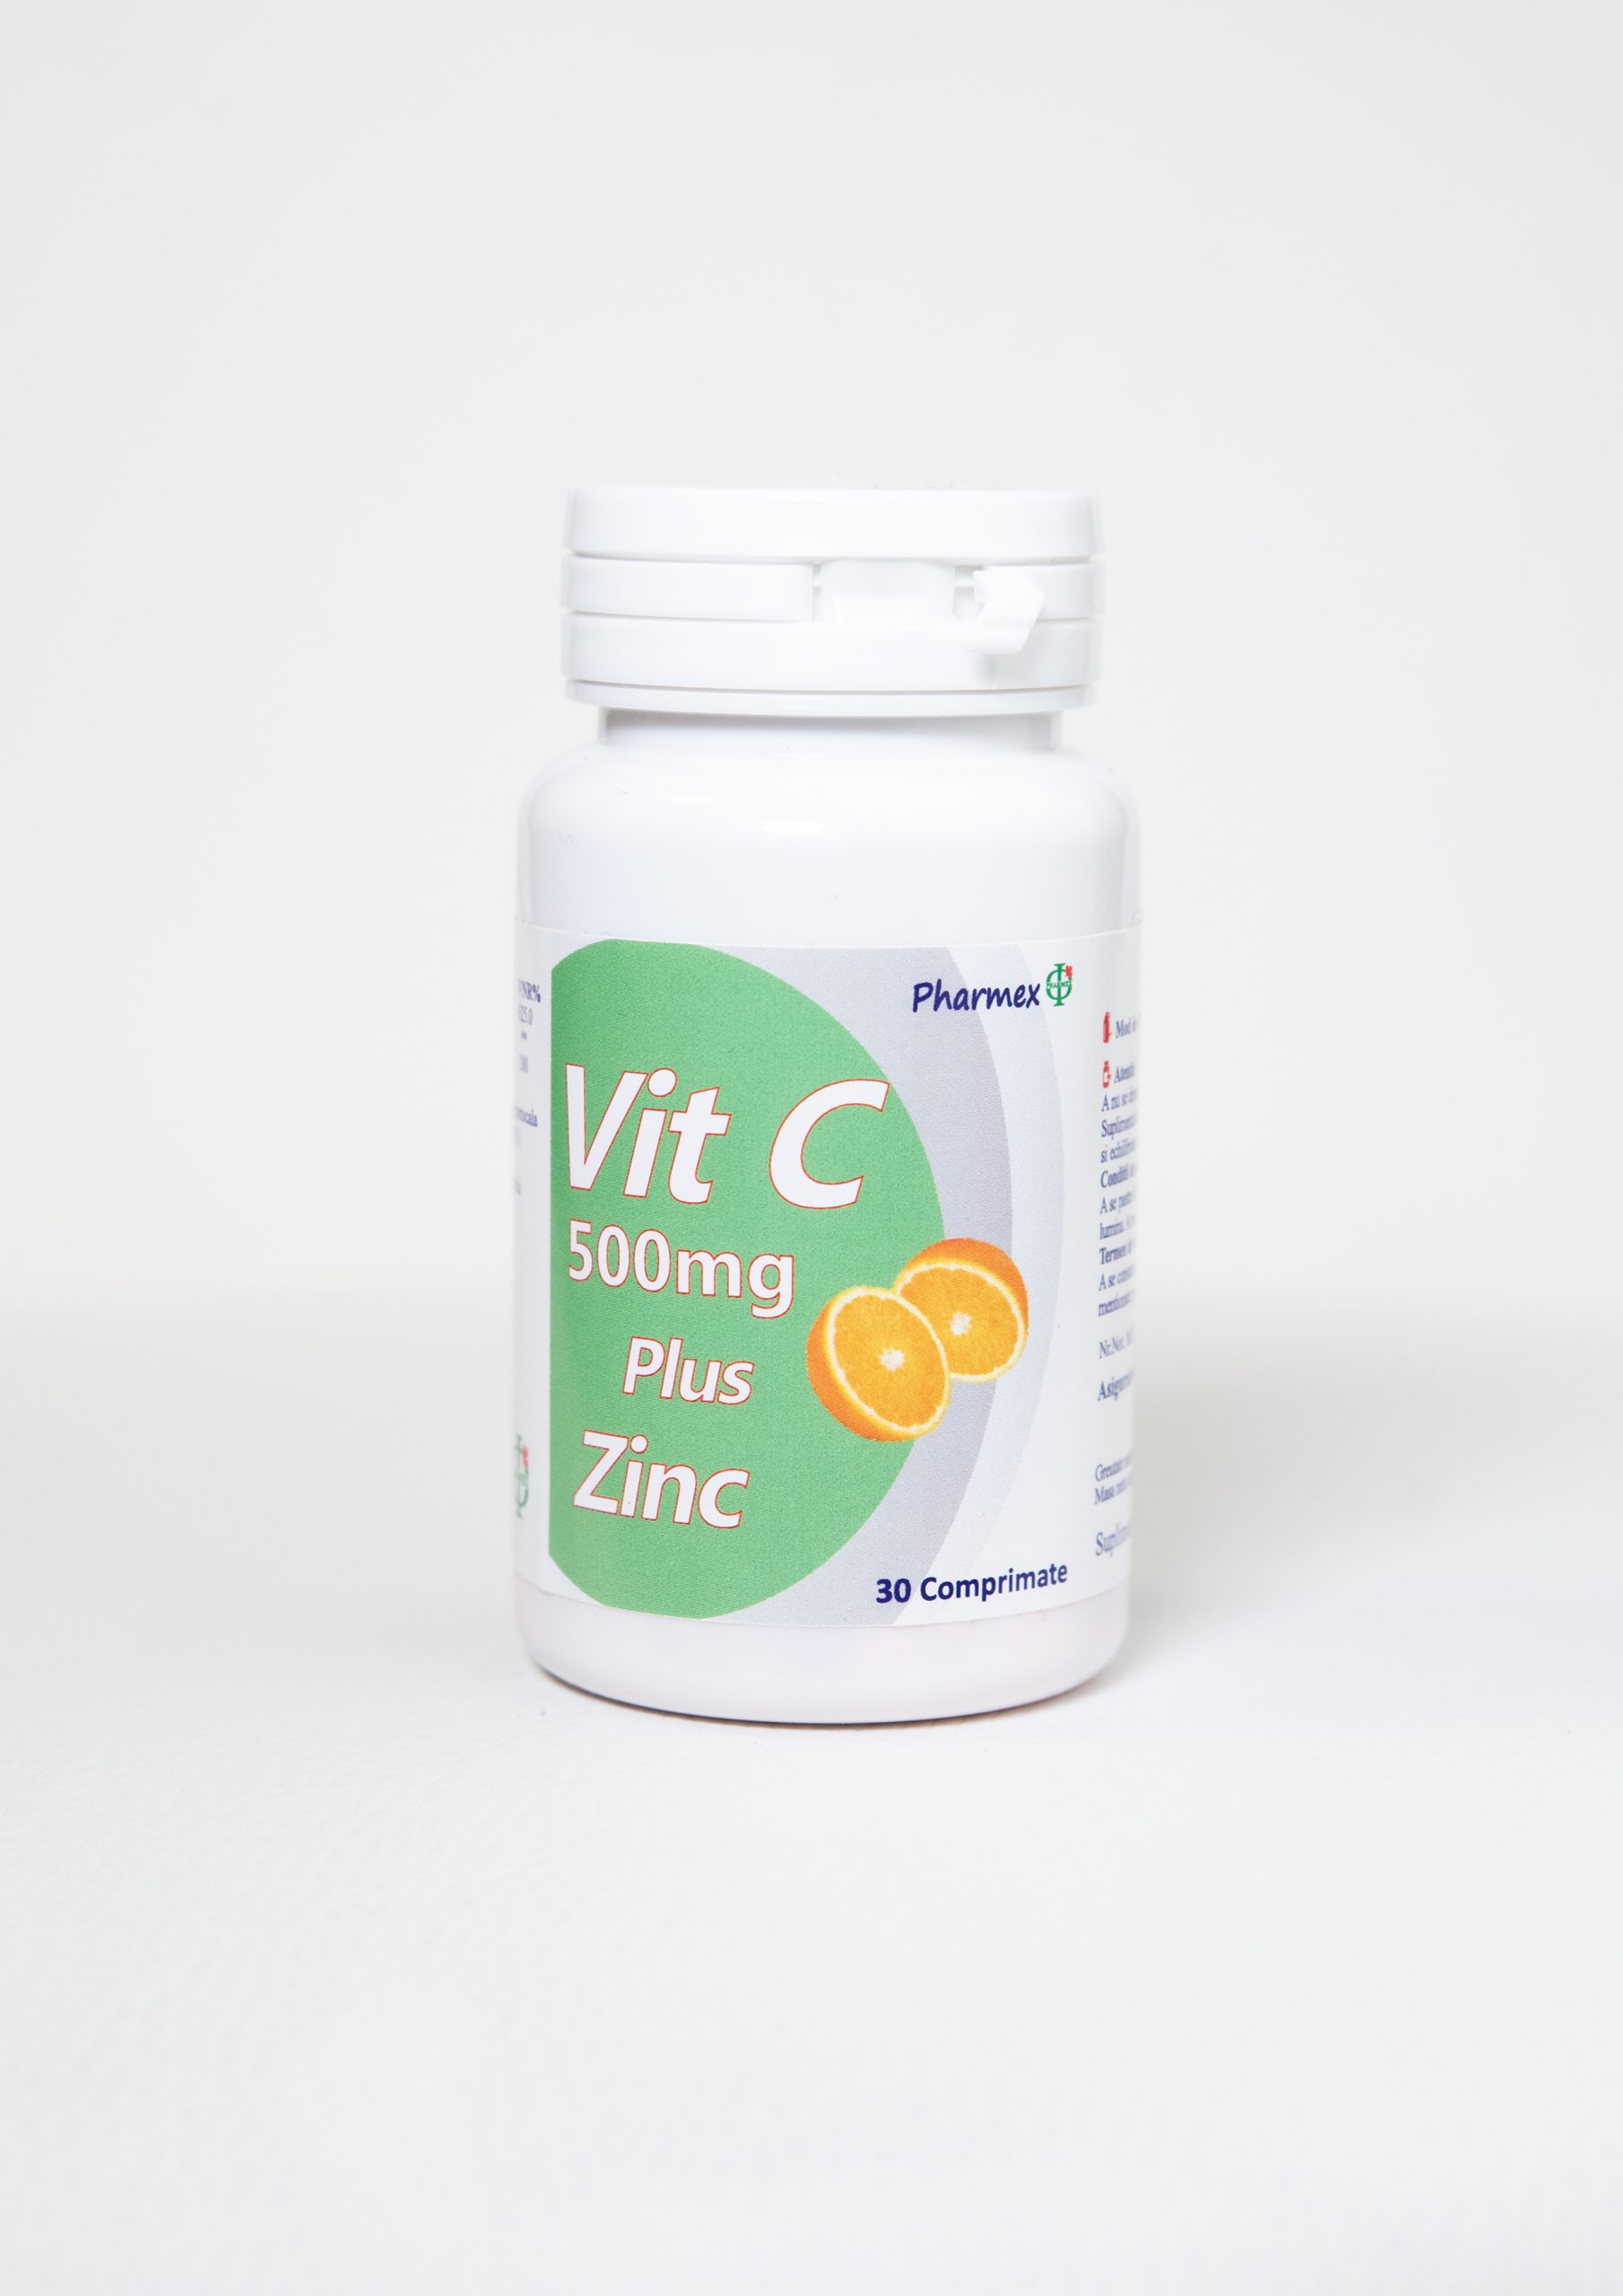 Imunitate - Vitamina C 500mg + Zinc, 30 comprimate, Pharmex, sinapis.ro